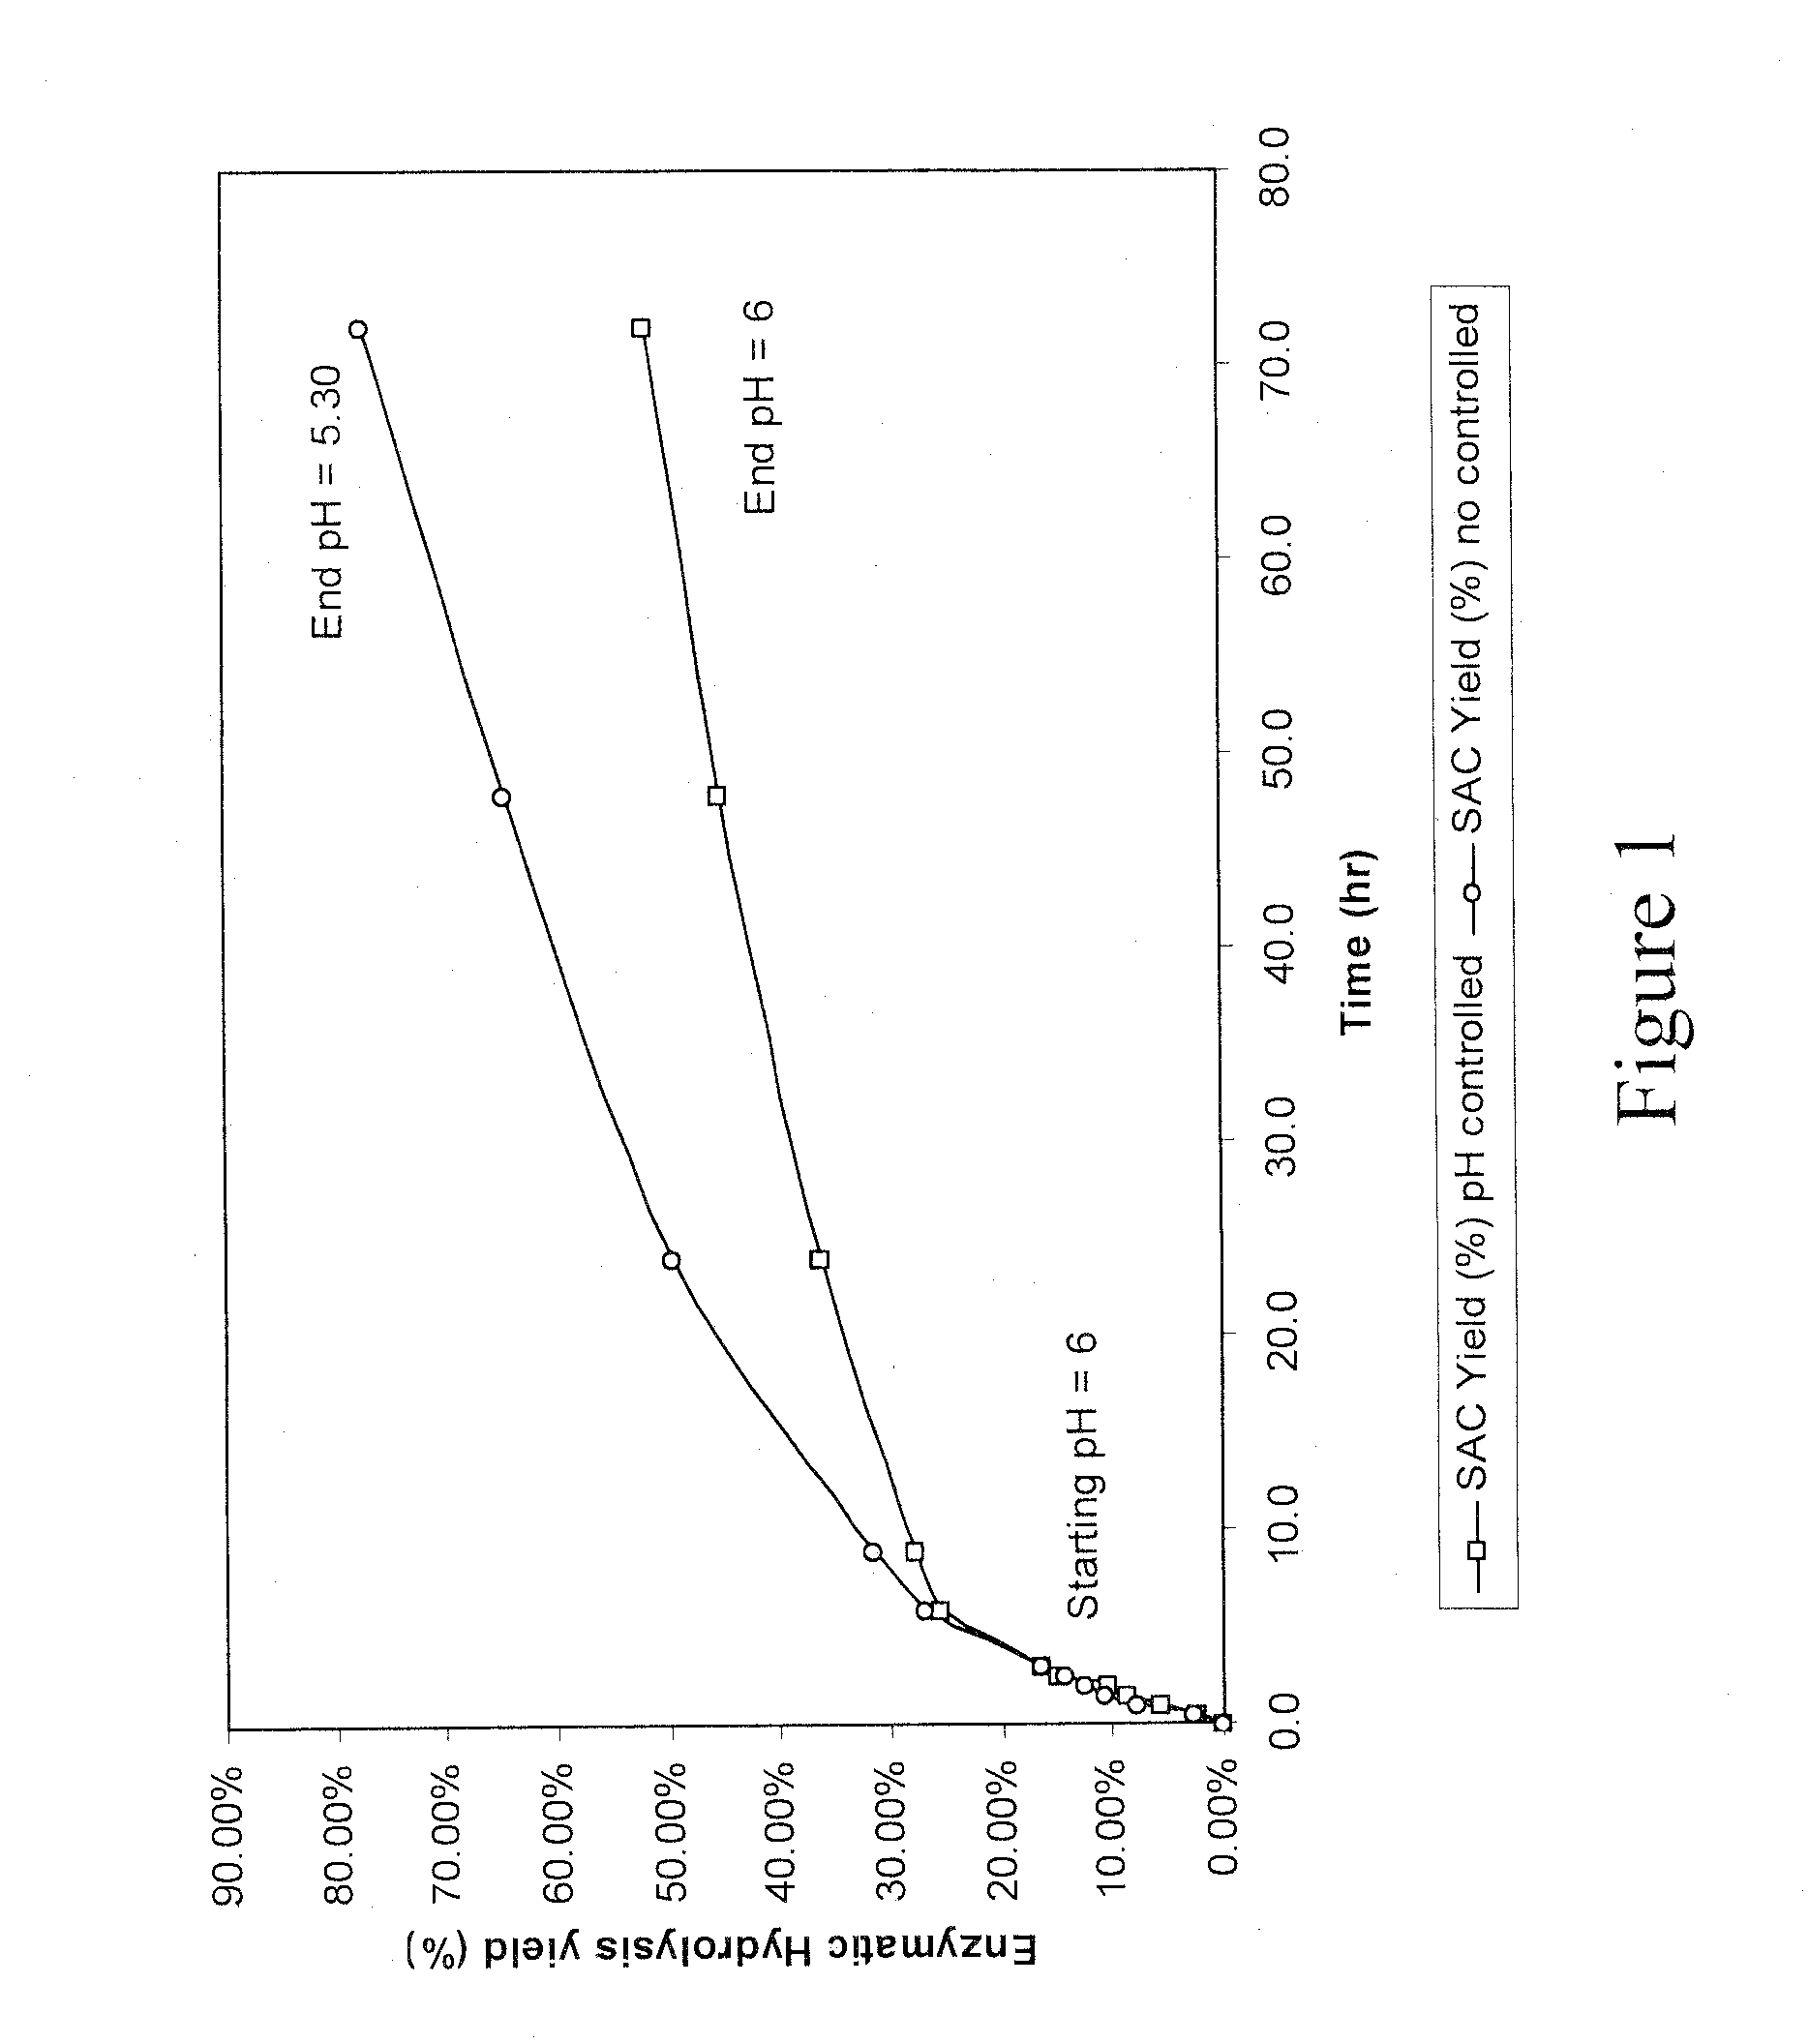 Enzymatic hydrolysis of pre-treated biomass